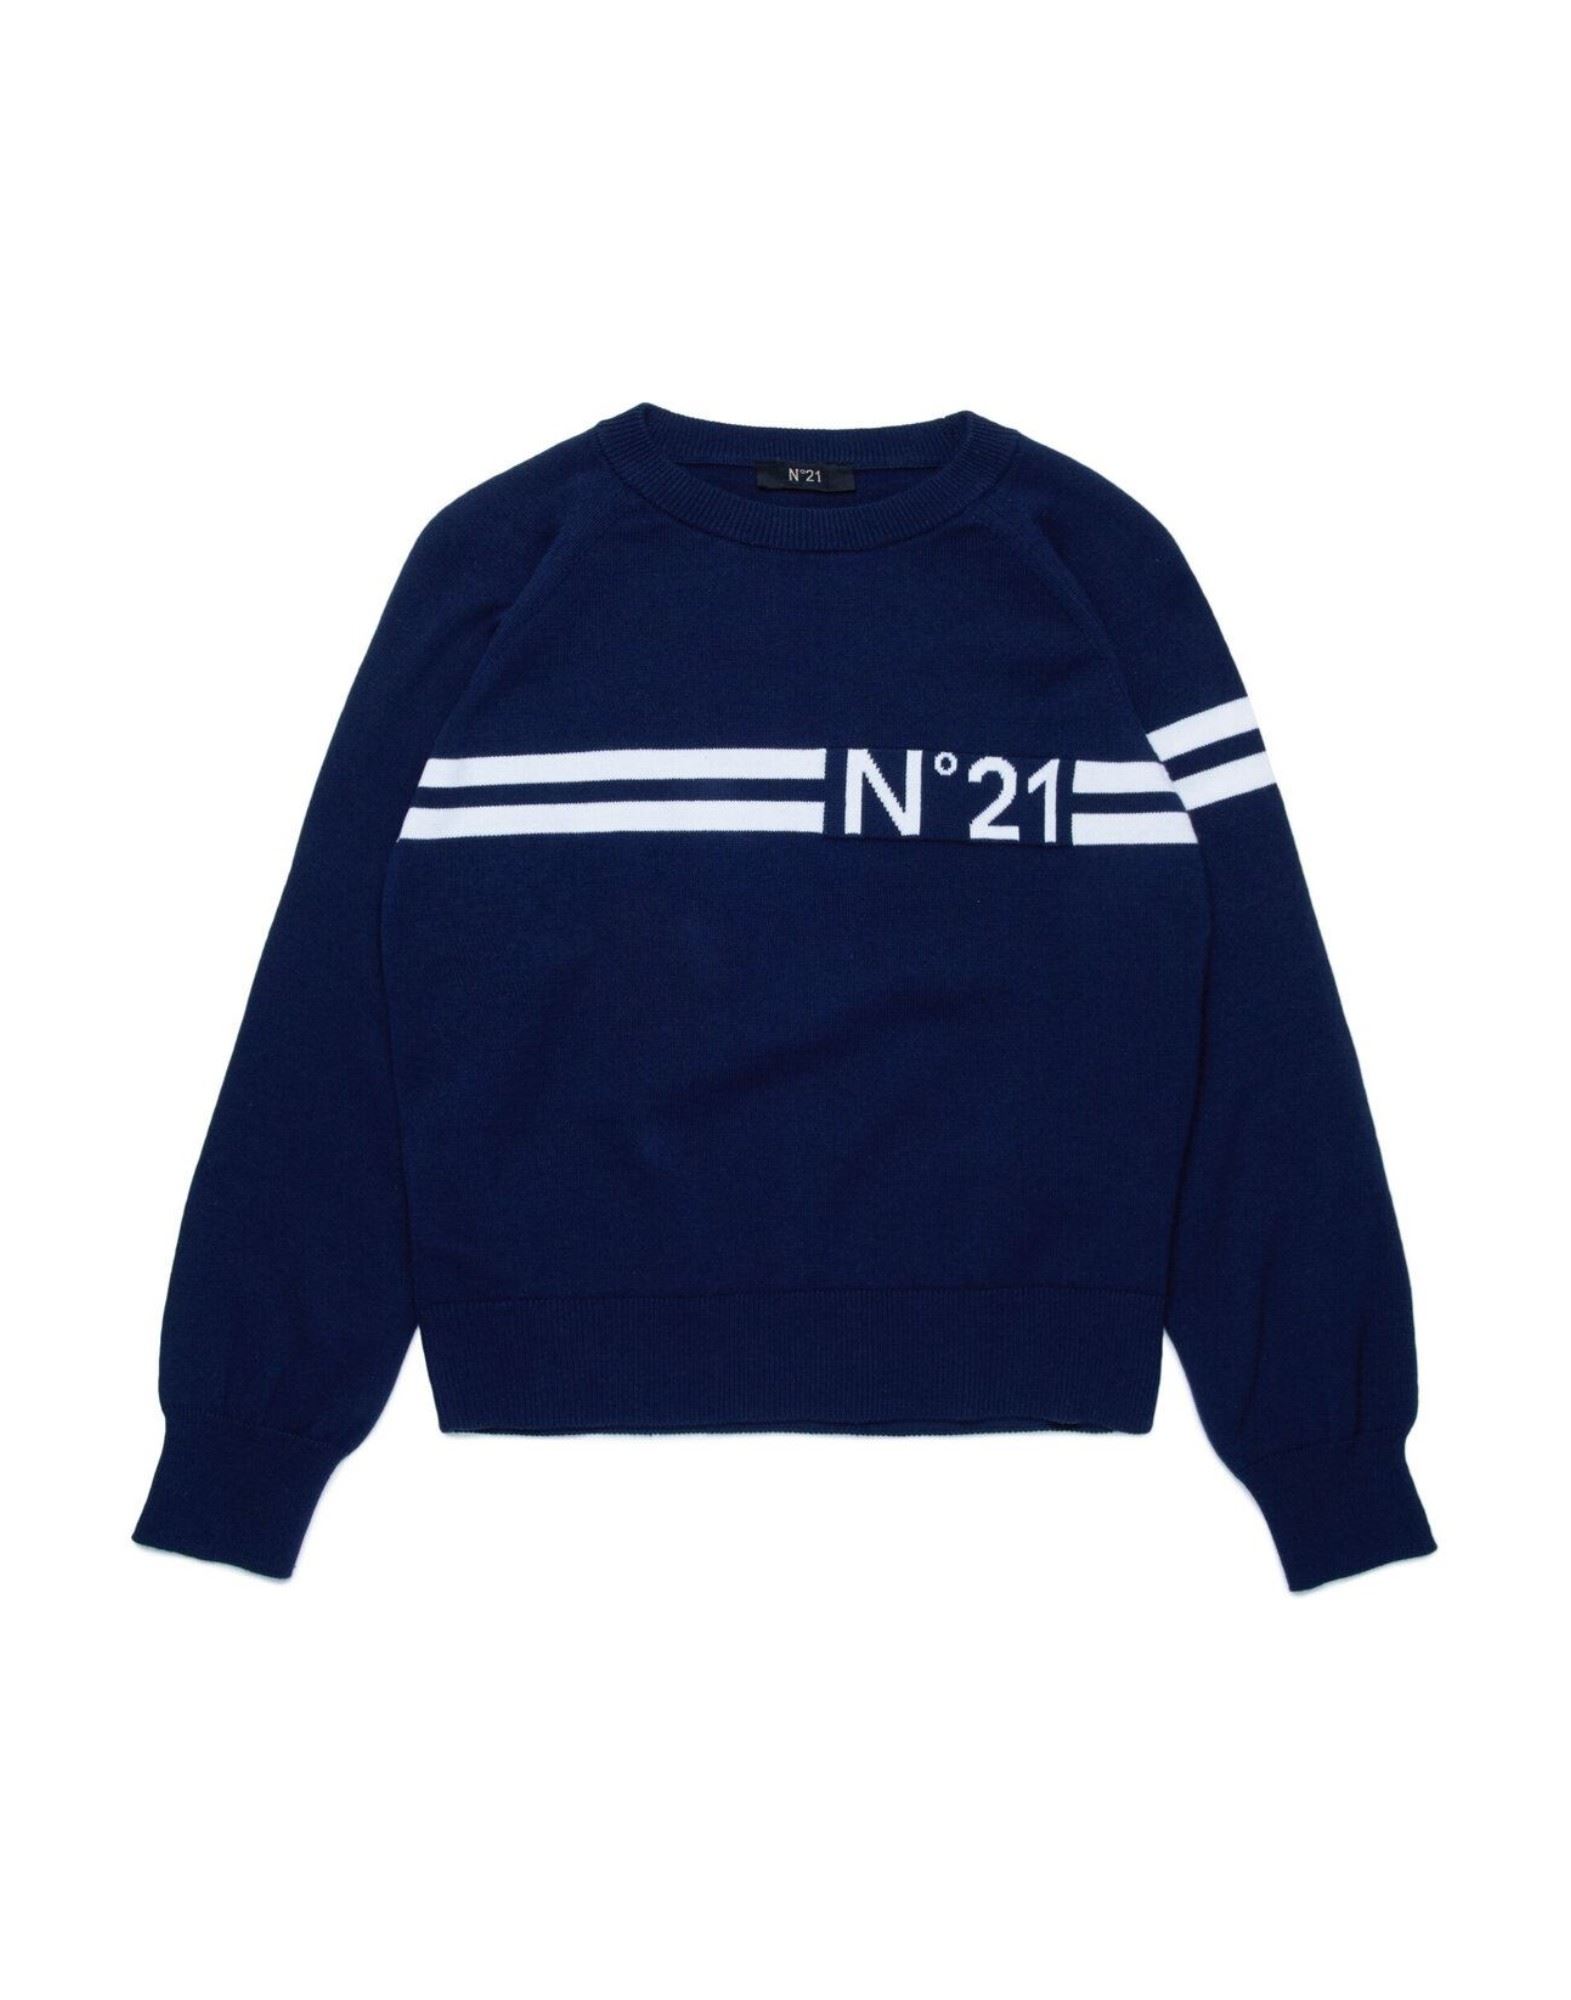 N°21 Sweatshirt Kinder Nachtblau von N°21